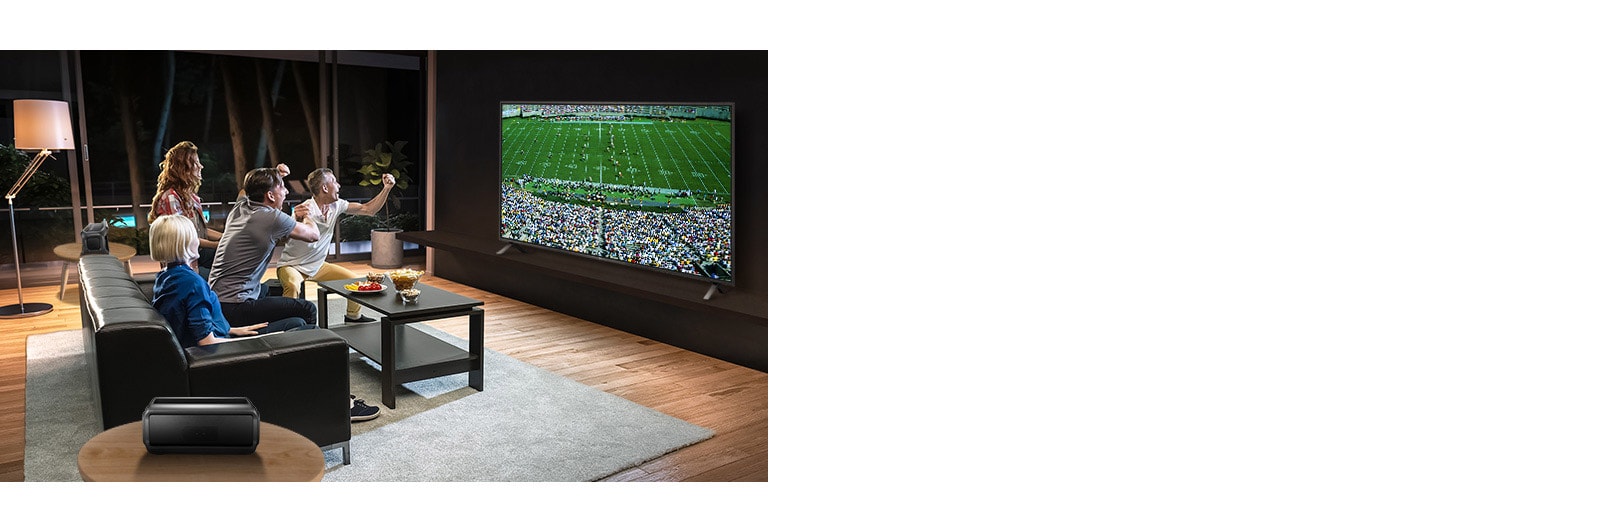 Les gens regardent un match de sport à la télévision dans le salon avec des haut-parleurs arrière Bluetooth.